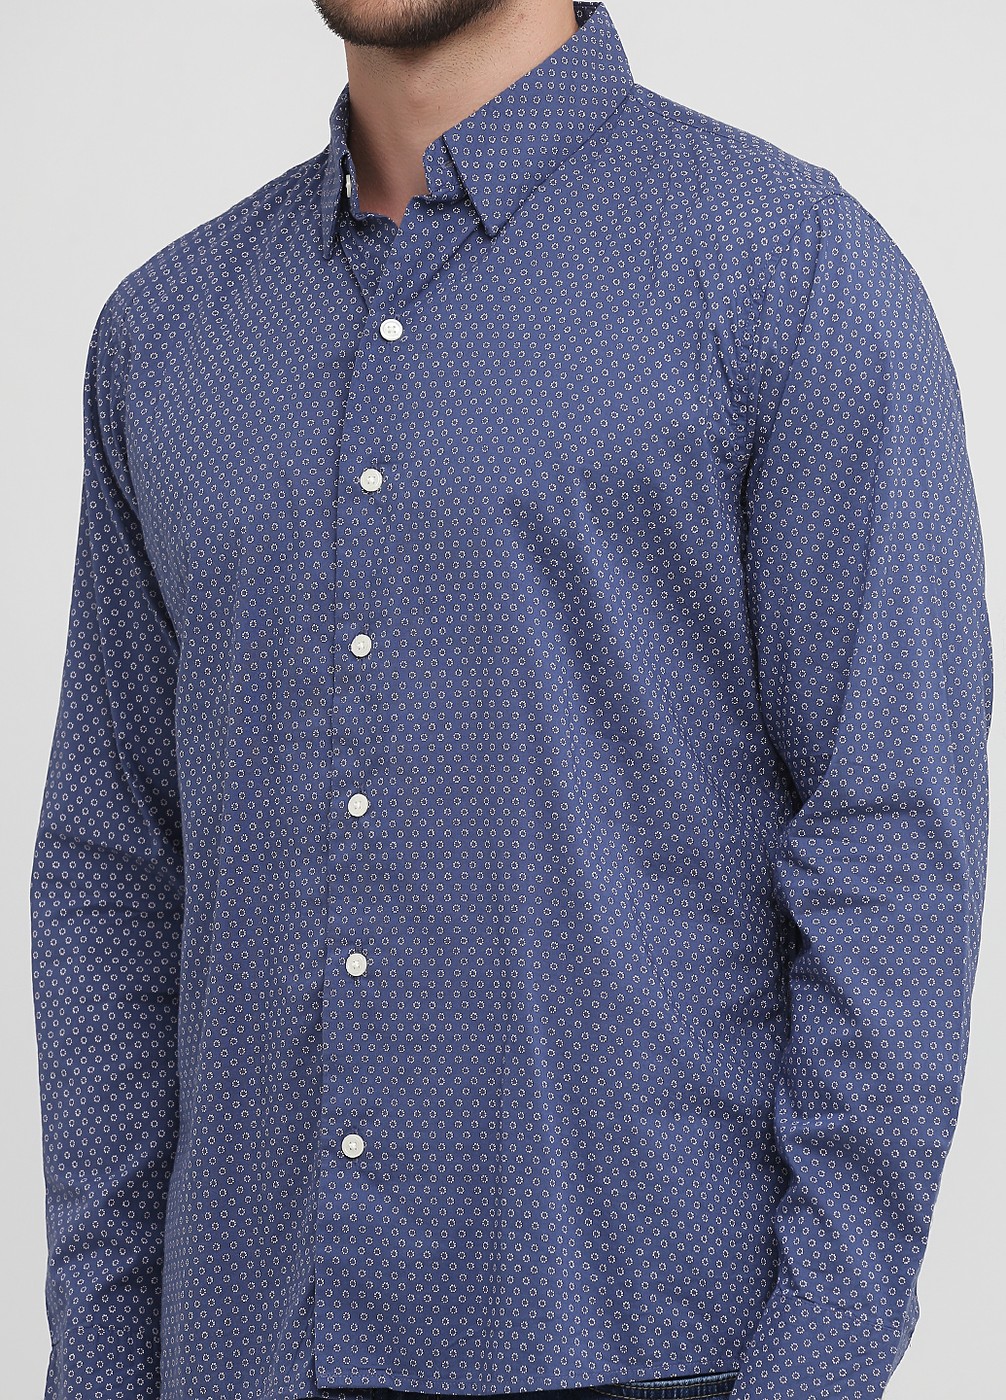 Мужская рубашка - рубашка Abercrombie & Fitch, S, S